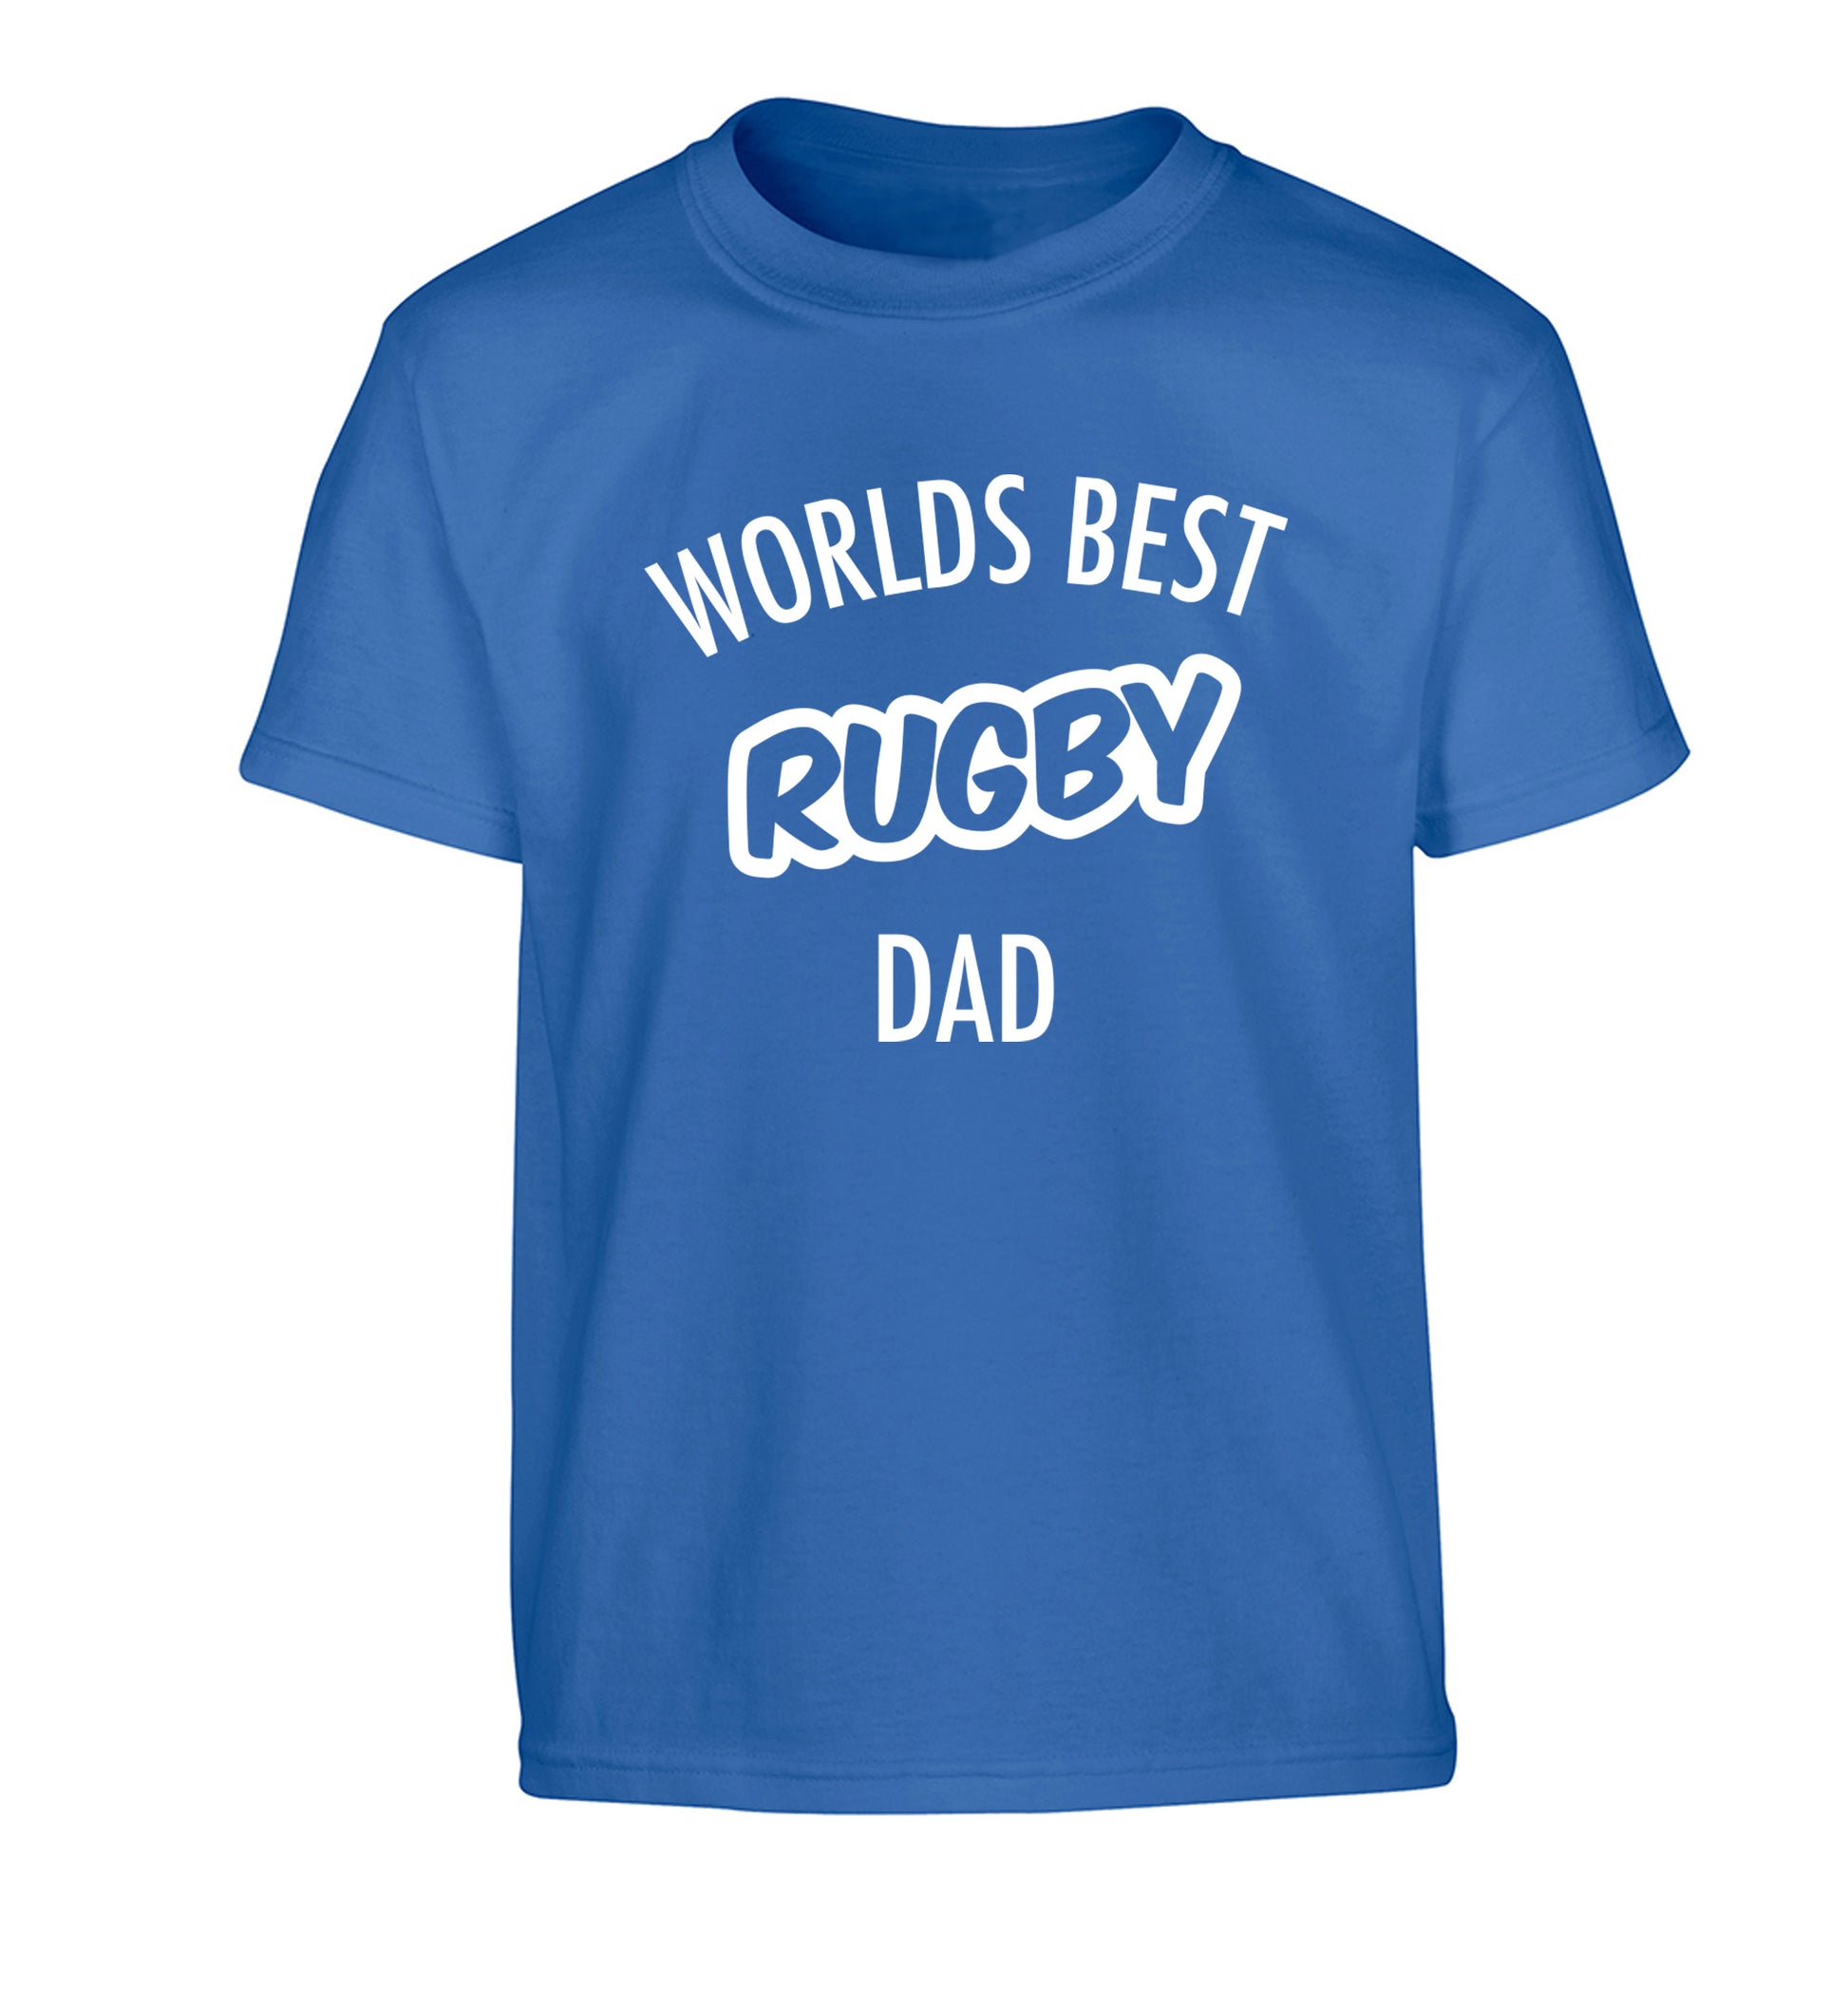 Worlds best rugby dad Children's blue Tshirt 12-13 Years